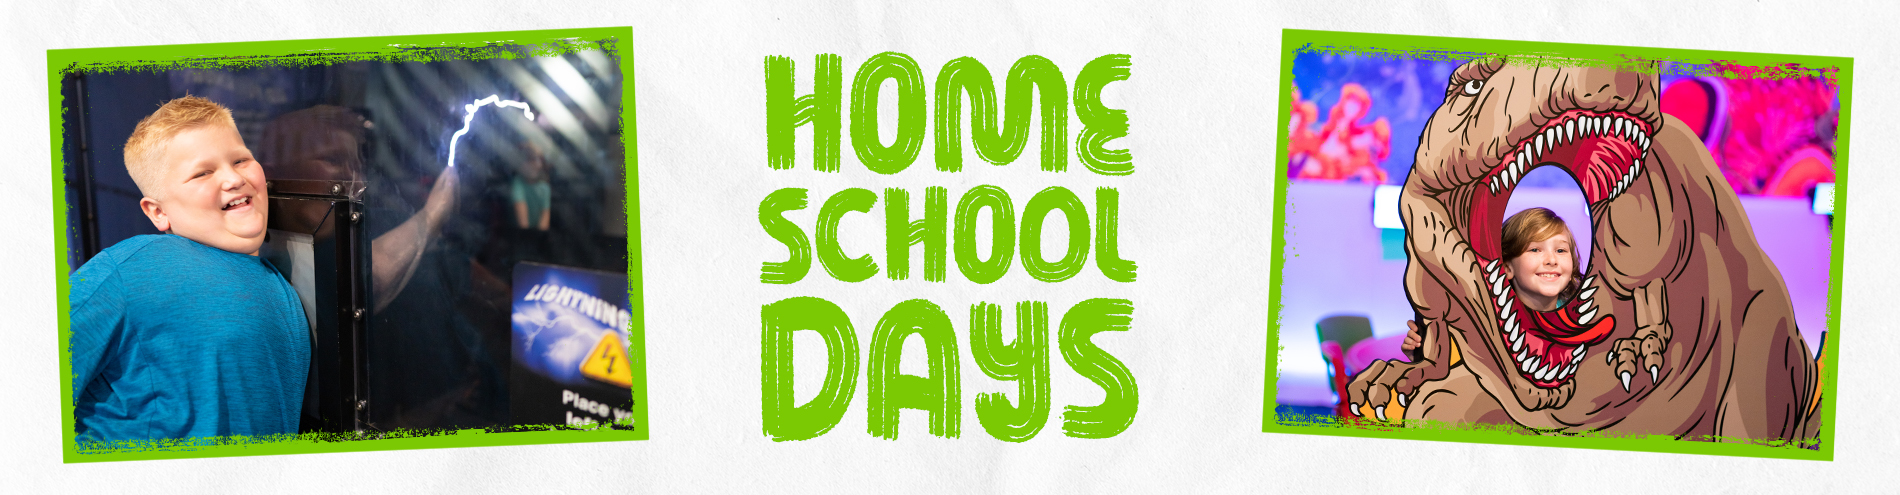 Home School Days Header